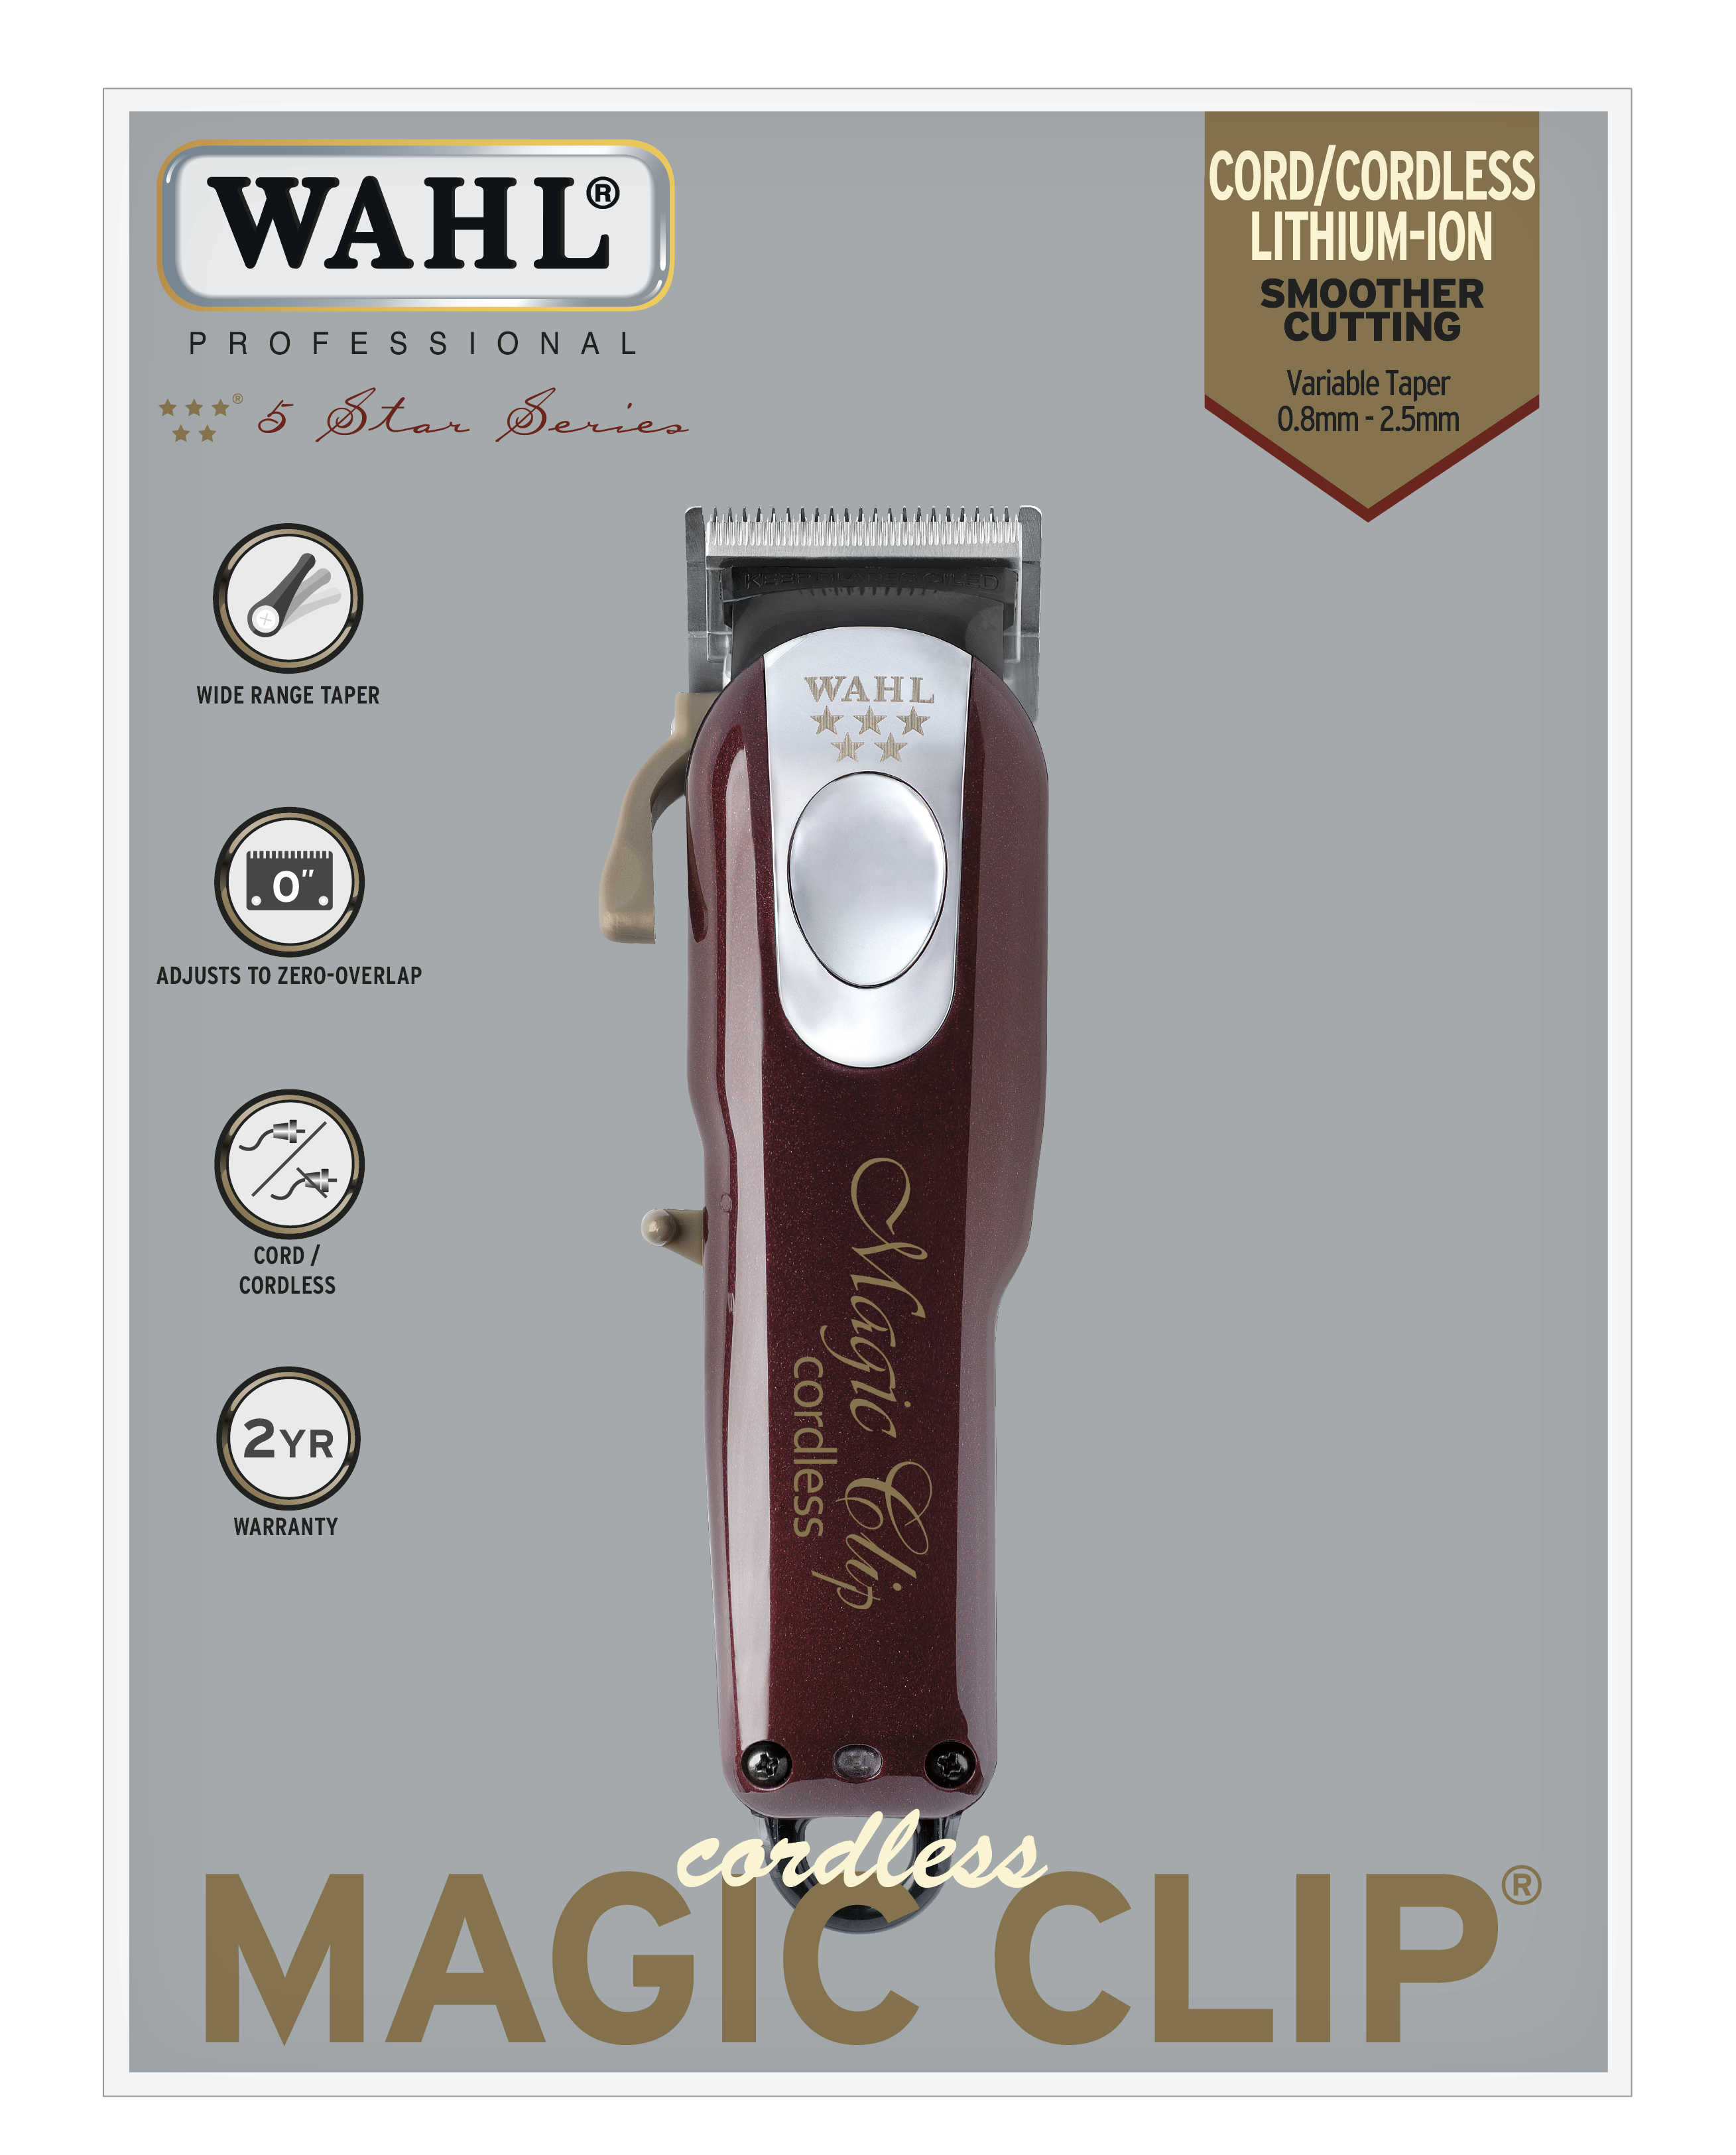 wahl magic clipper cordless